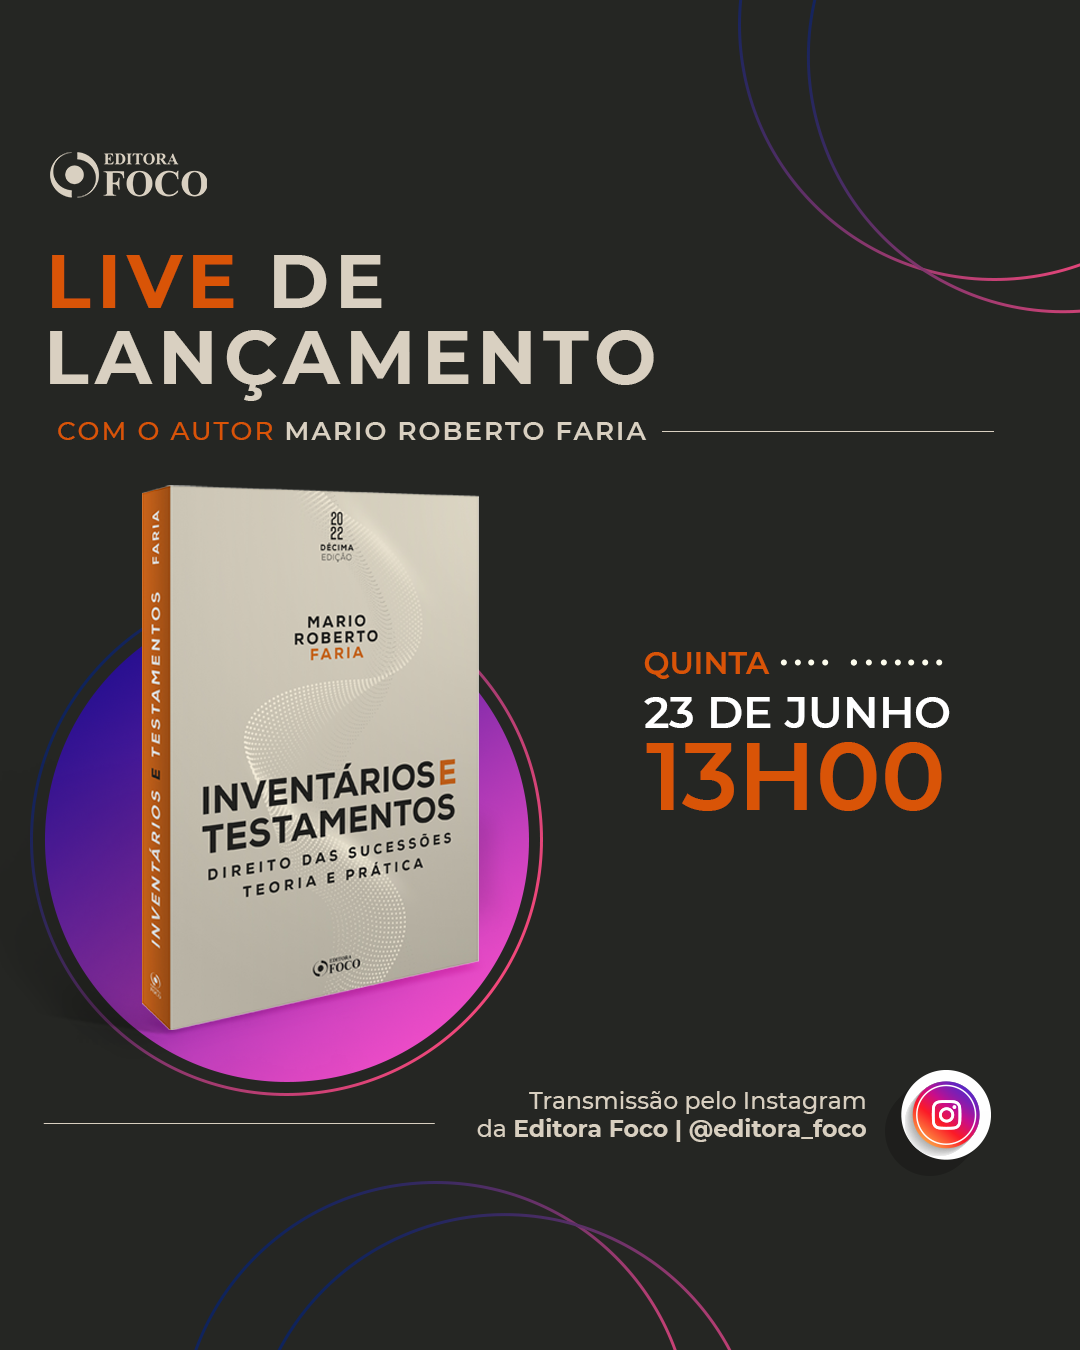 LIVE DE LANÇAMENTO: INVENTÁRIOS E TESTAMENTOS